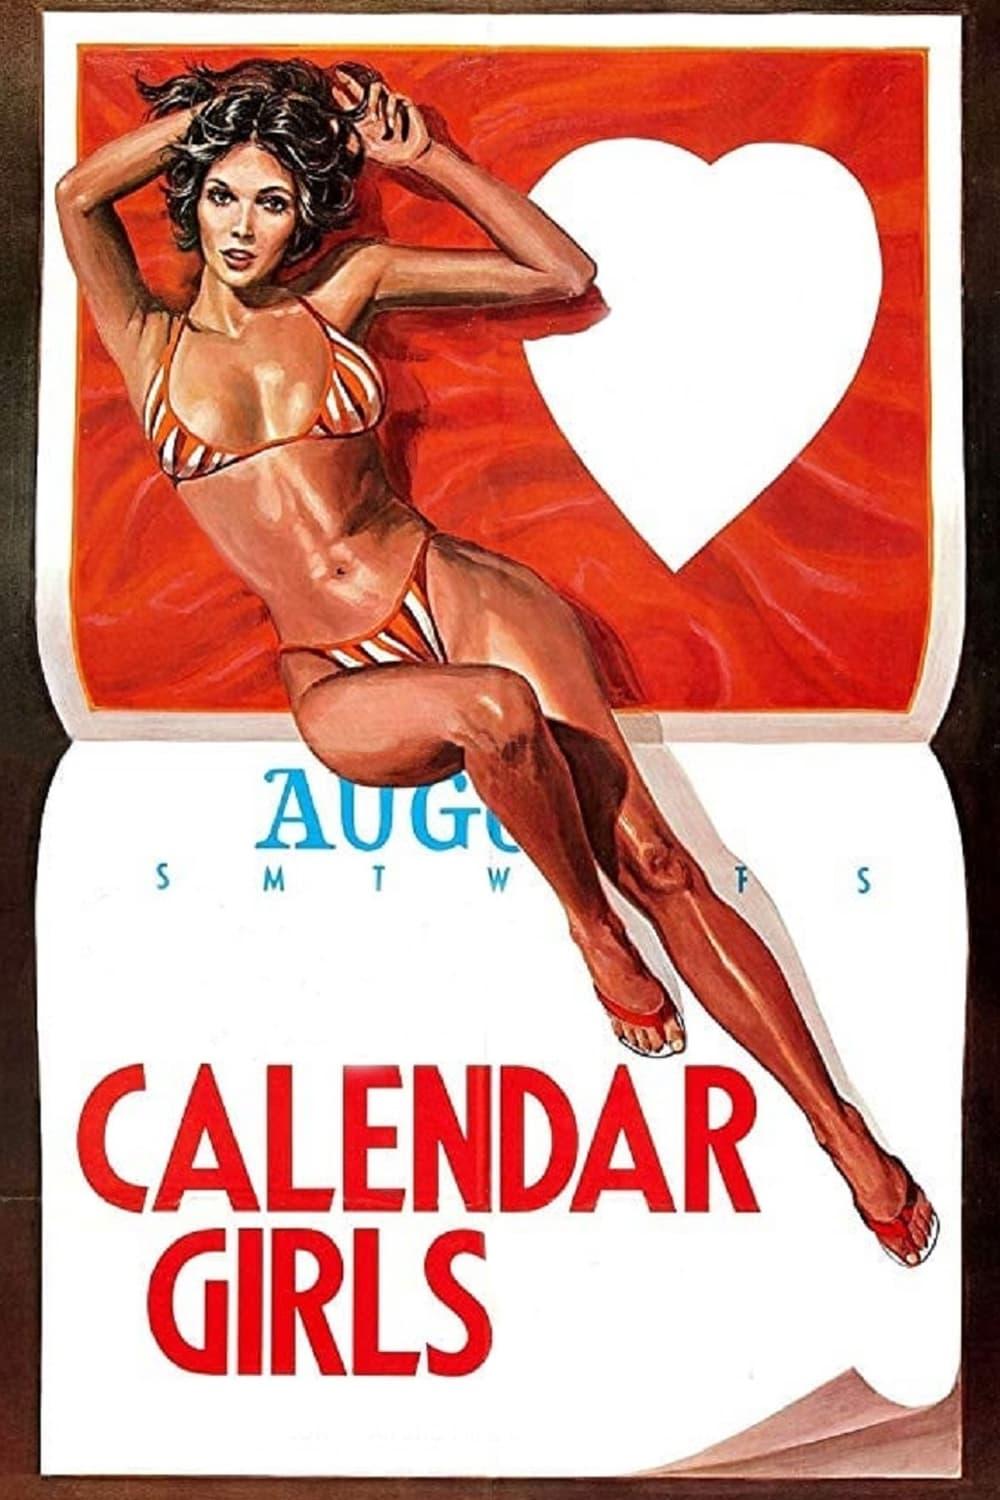 The Calendar Girls poster